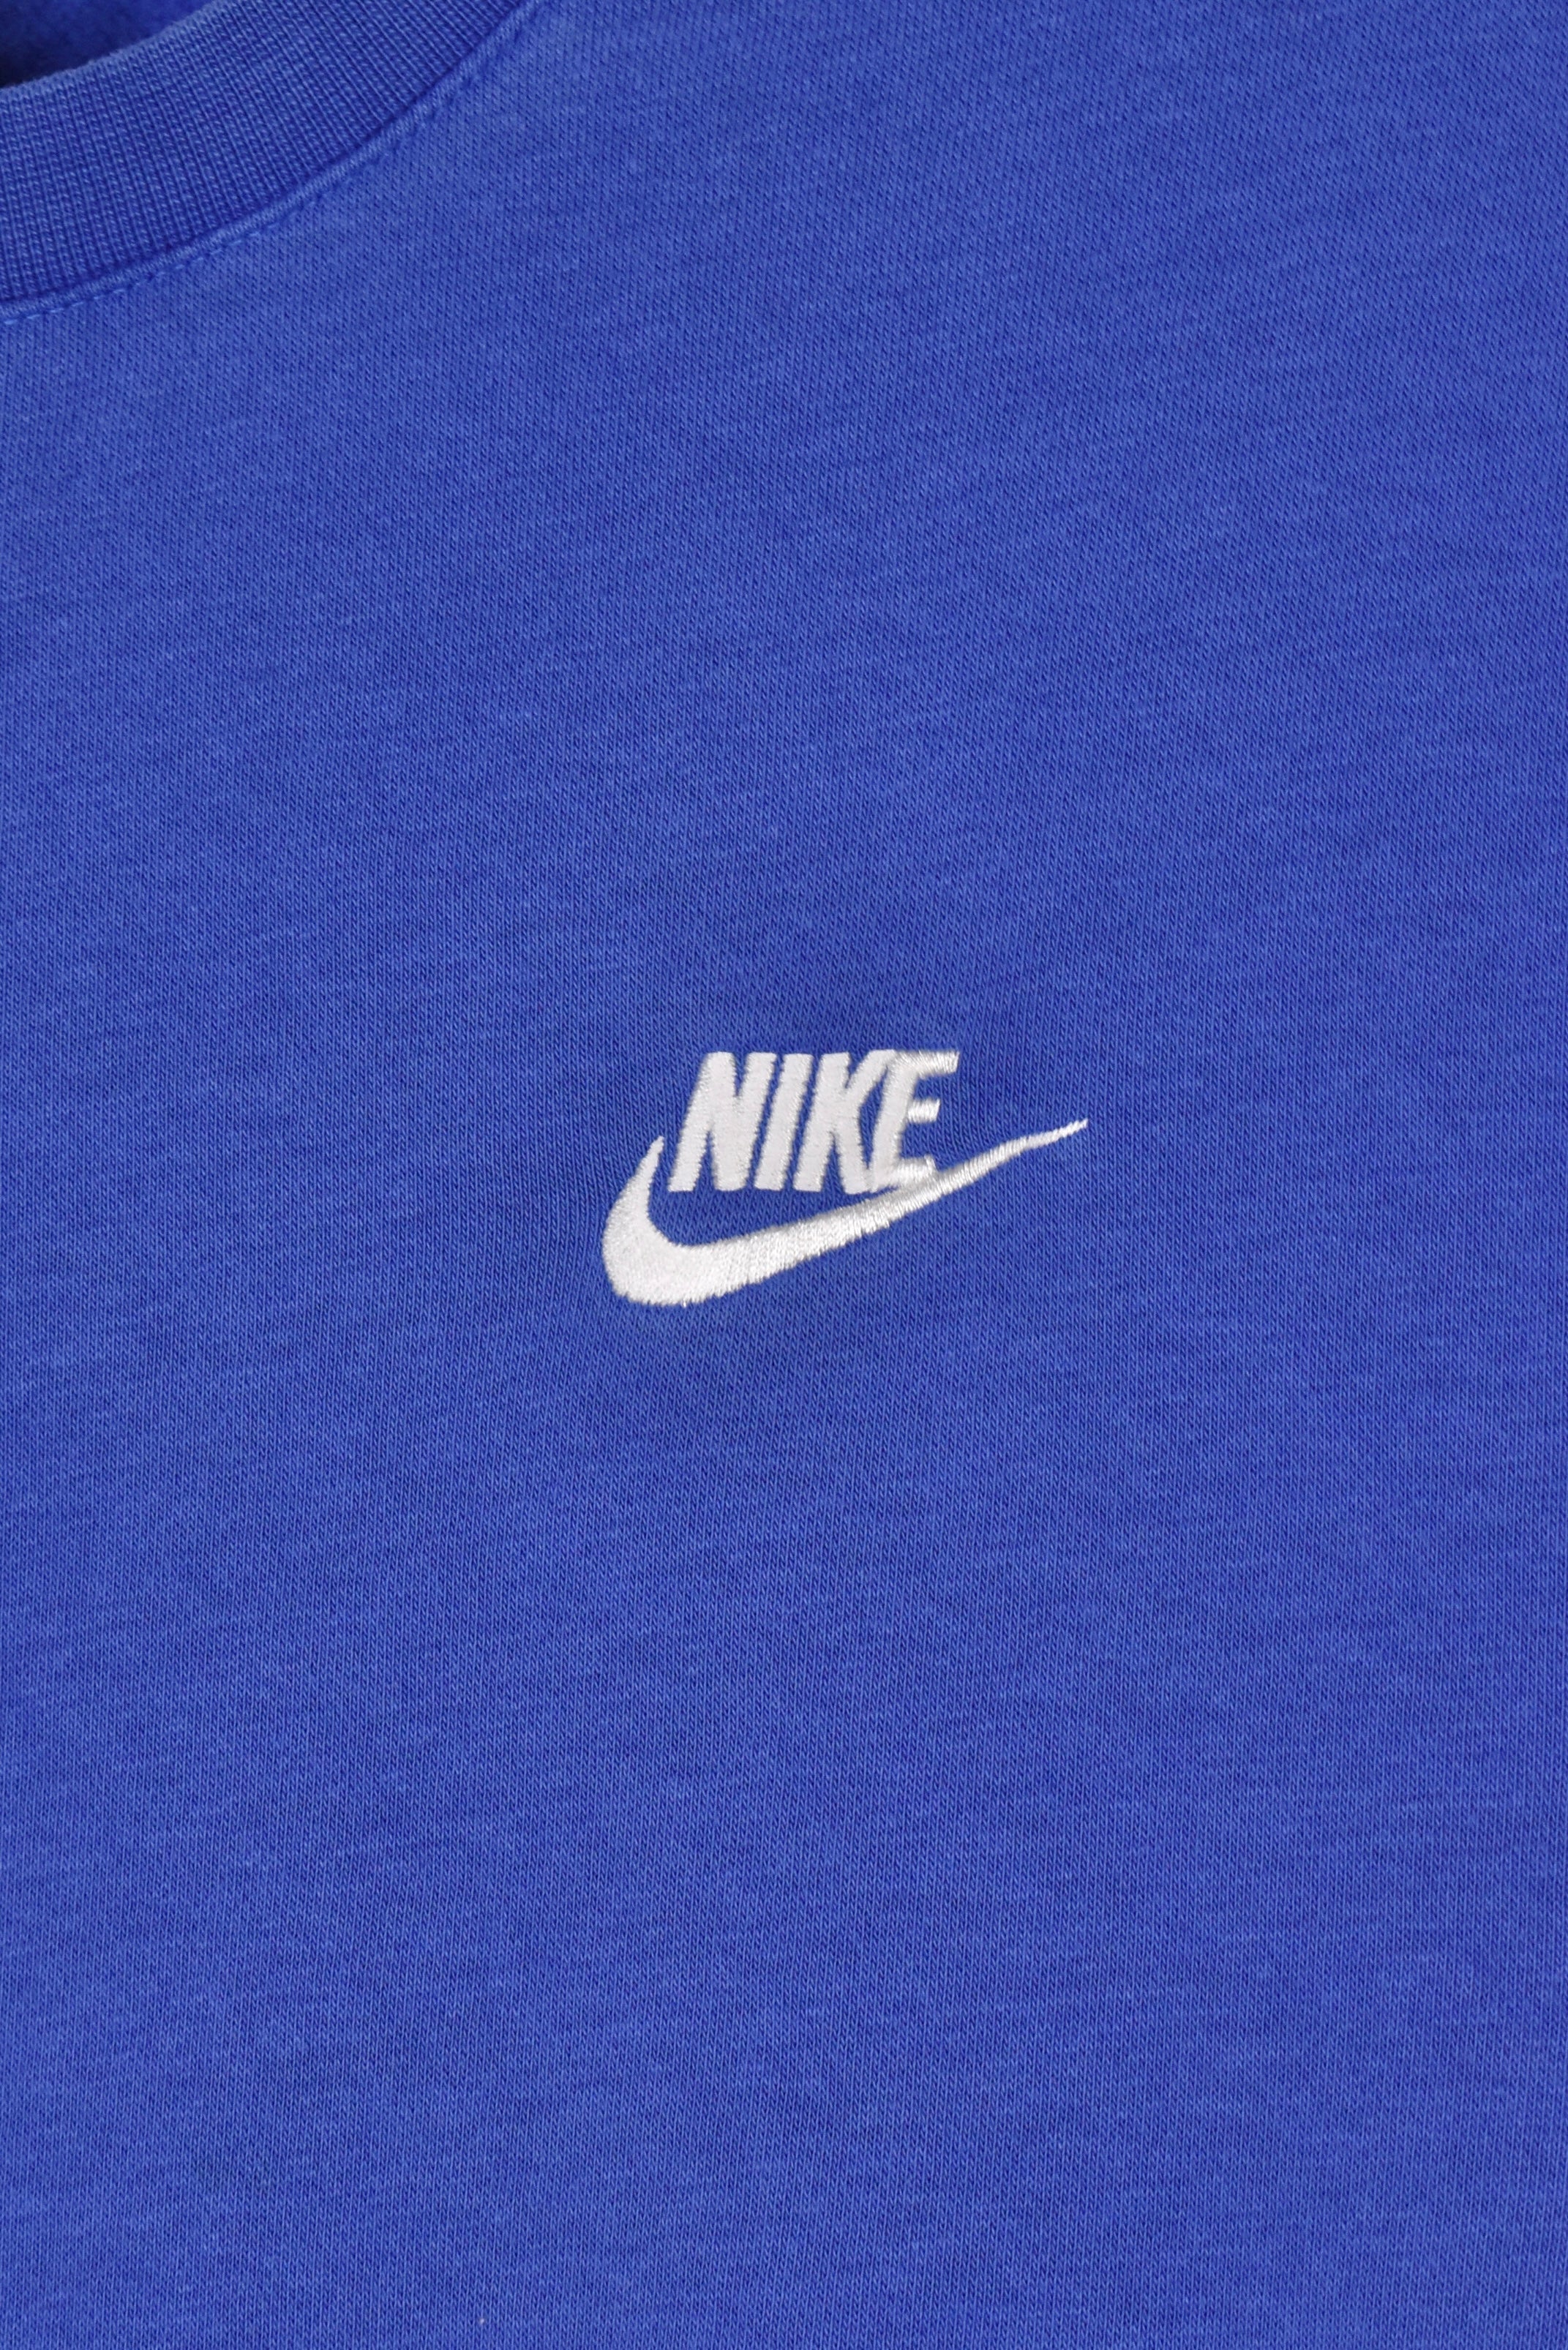 Vintage Nike sweatshirt (M), blue embroidered crewneck